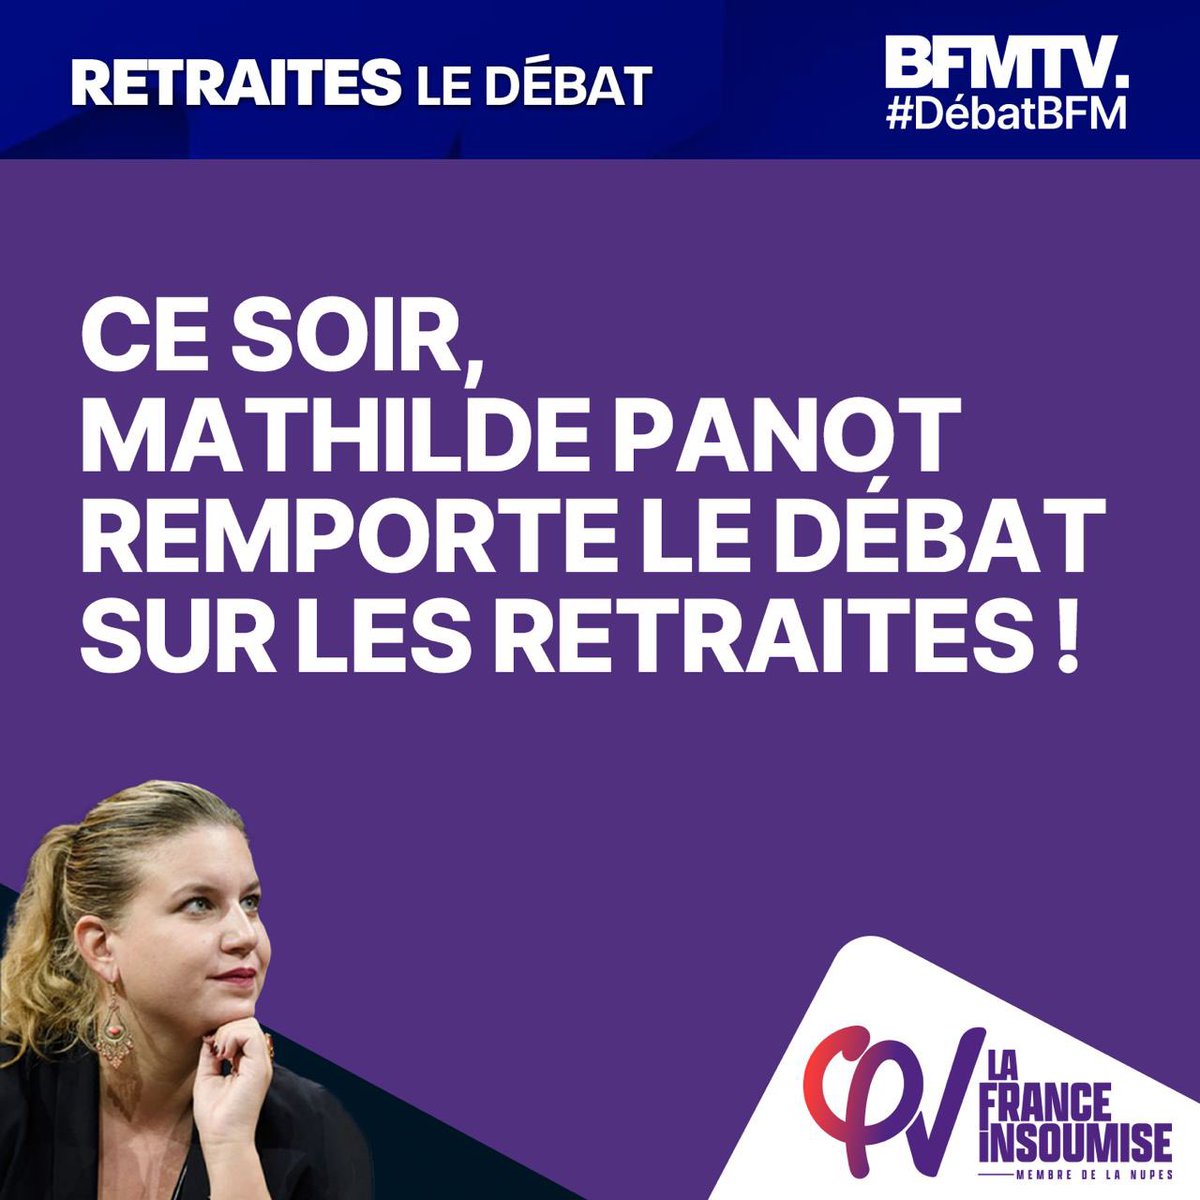 Merci @MathildePanot ! Seule sur le plateau à se tenir du côté de la mobilisation du peuple pour sauver nos retraites et défendre le droit au bonheur ✊

#DébatBFM